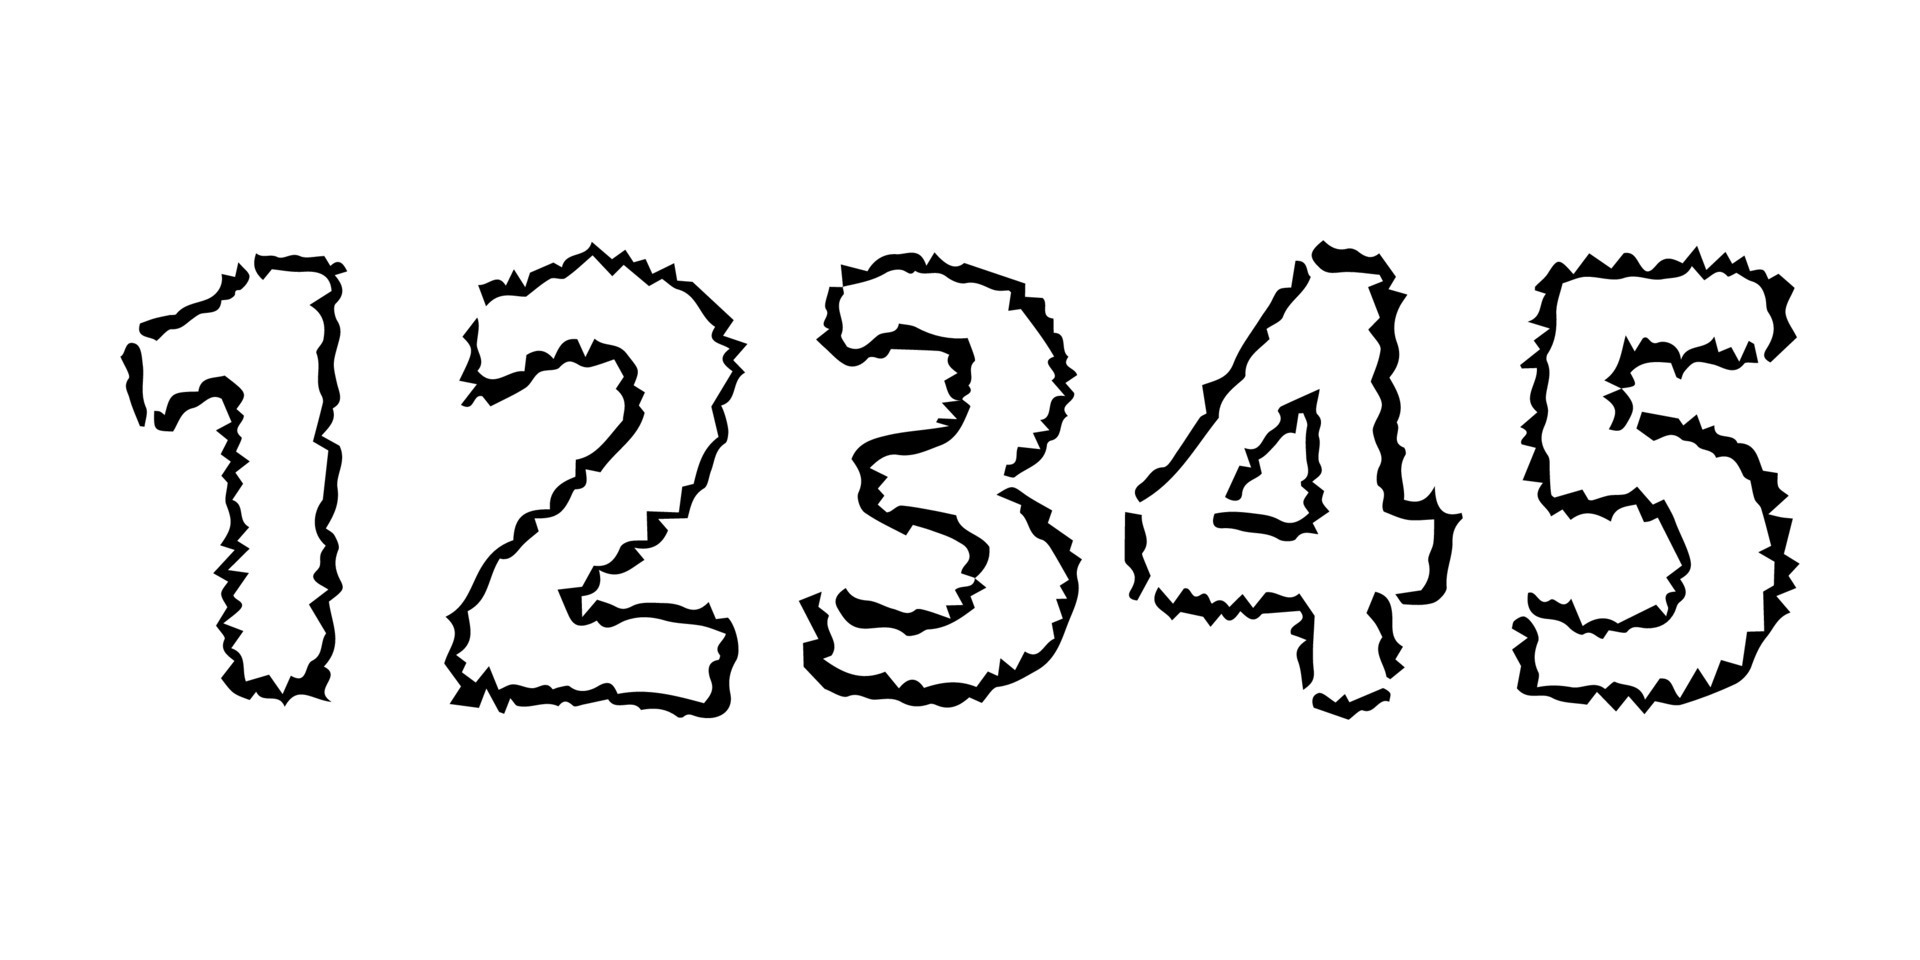 12345 - テレビゲーム